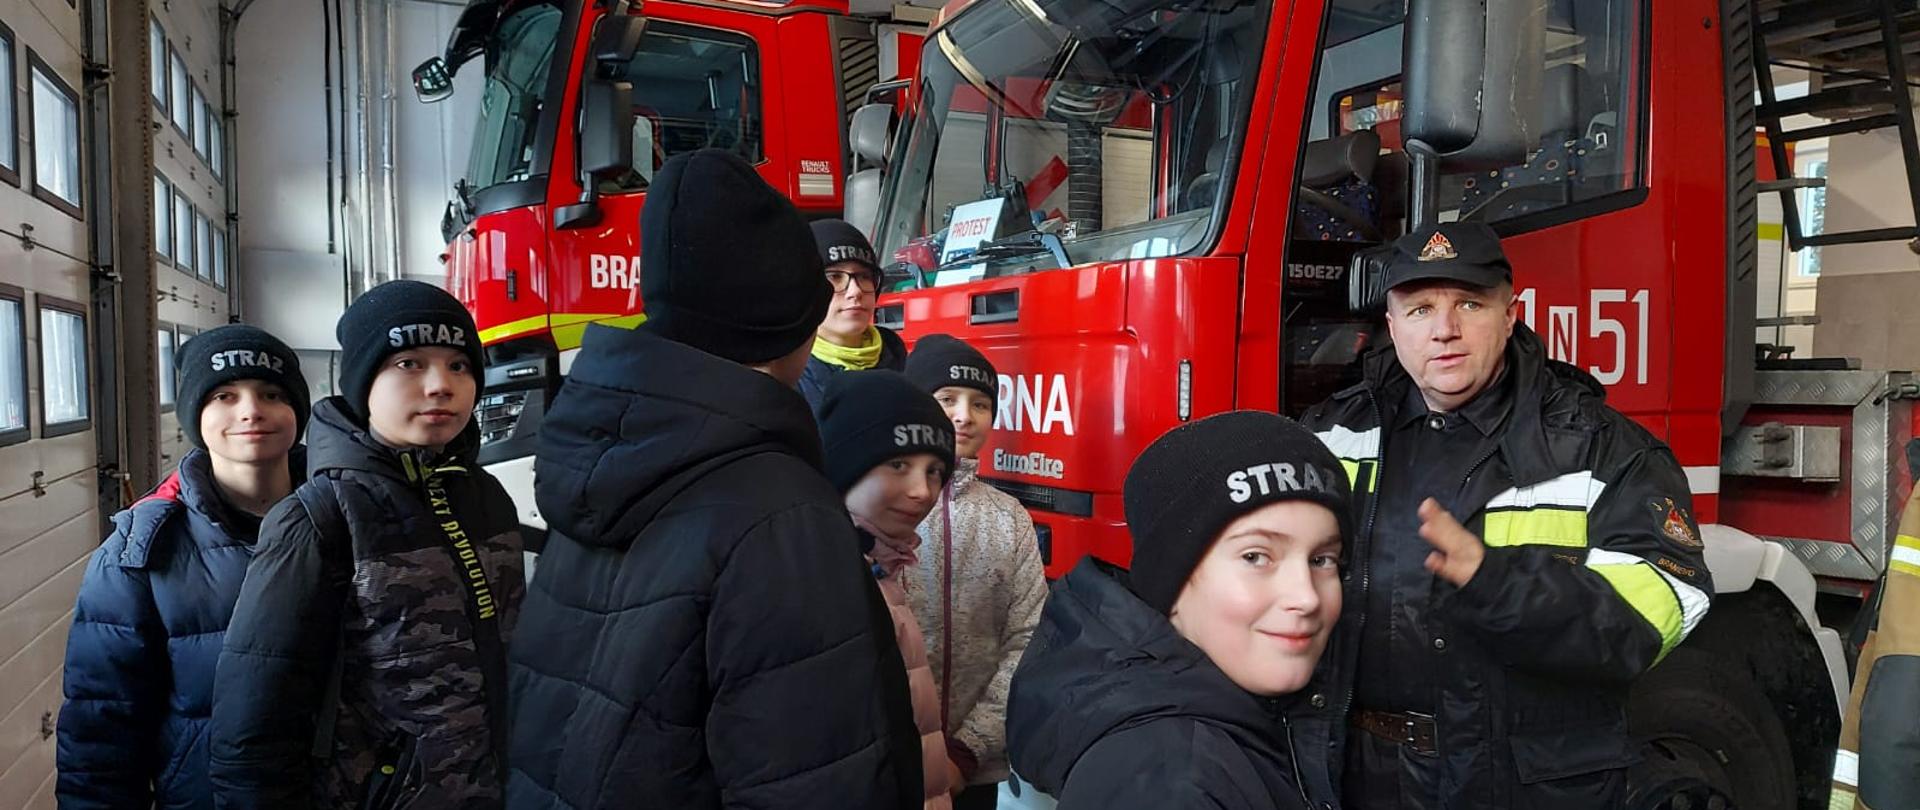 Zdjęcie zrobione w garażu bojowym. Na zdjęciu grupka dzieci i strażak. W tle czerwone samochody strażackie.